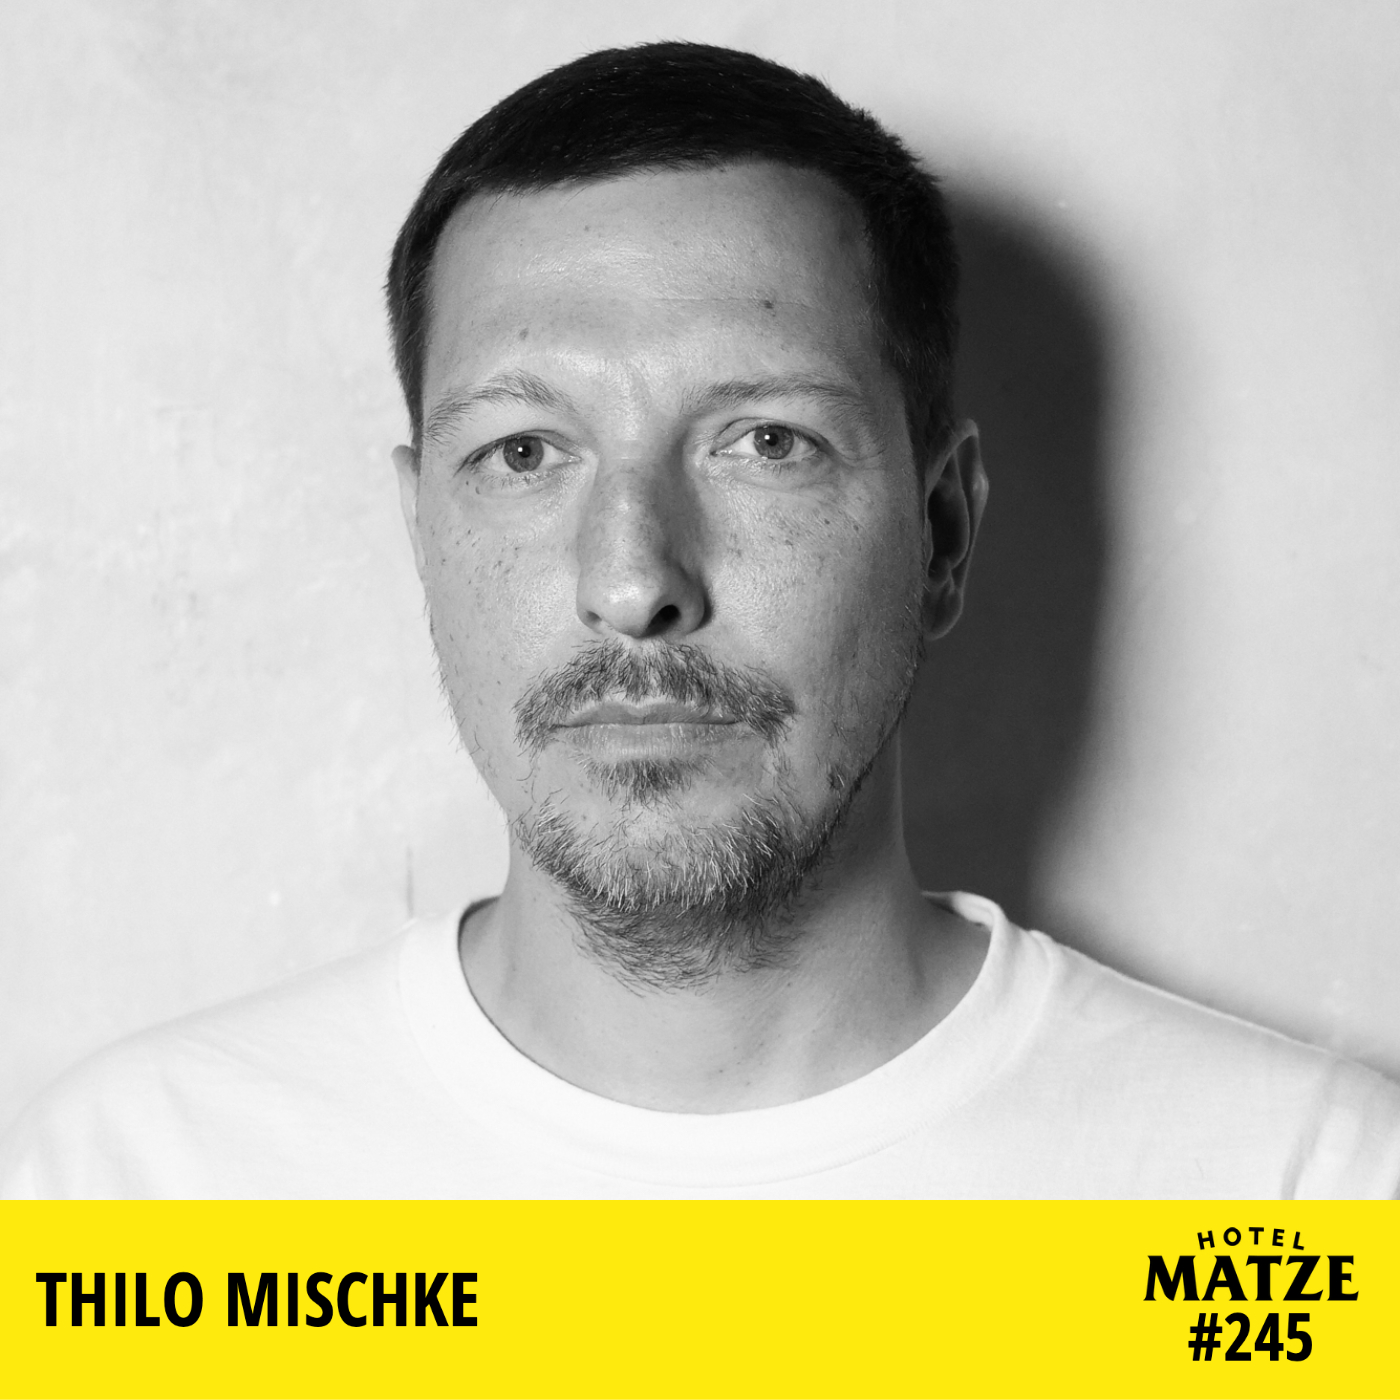 Thilo Mischke (2023) – Was ist deine größte Angst?